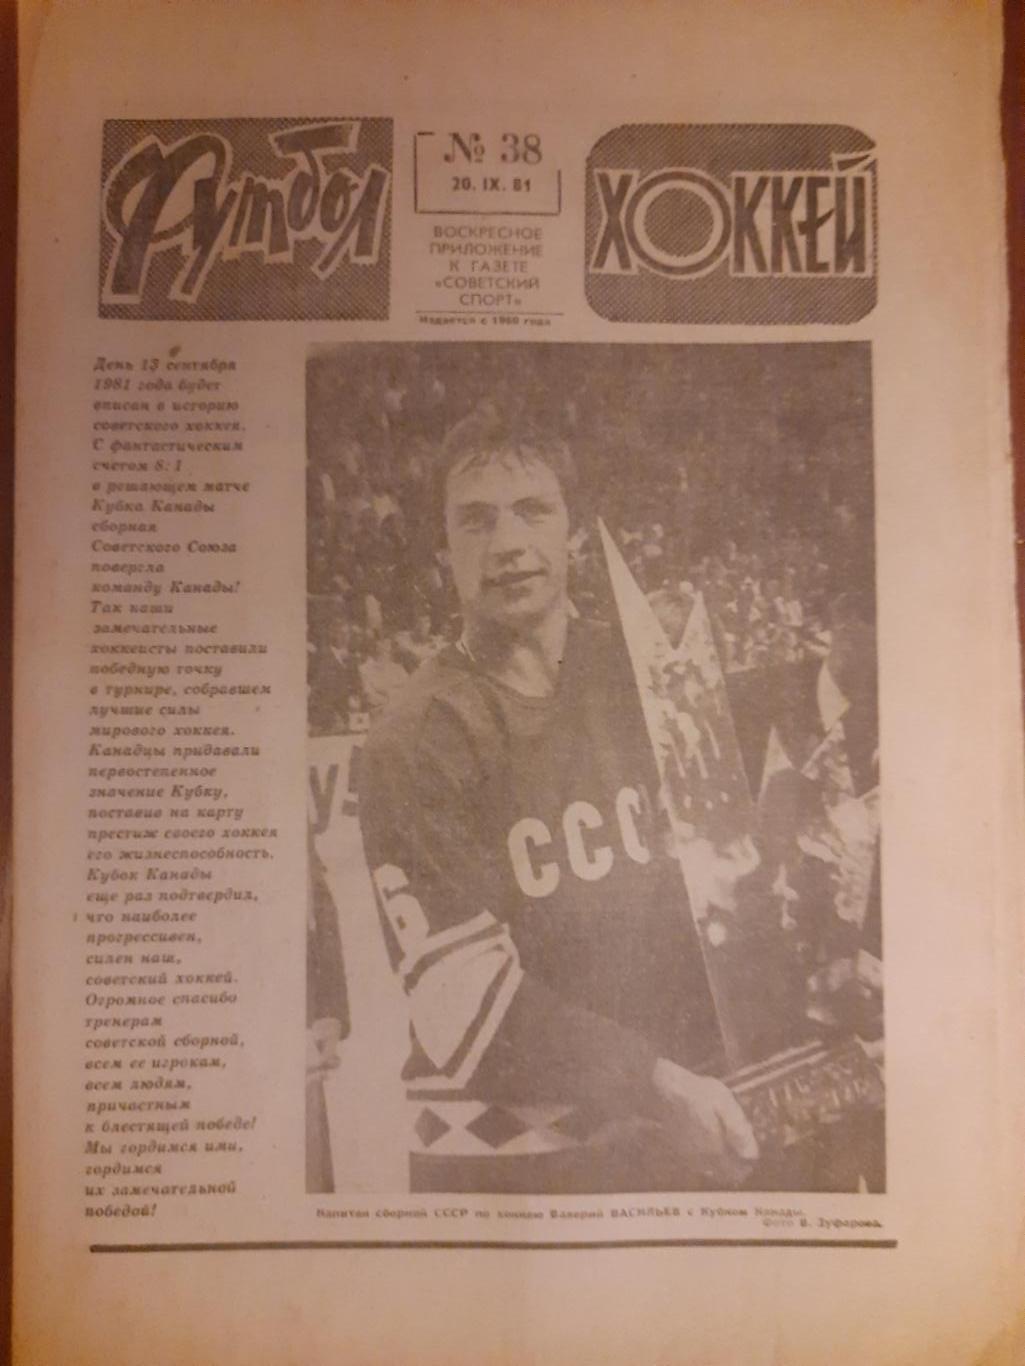 еженедельник футбол-хоккей #38,1981